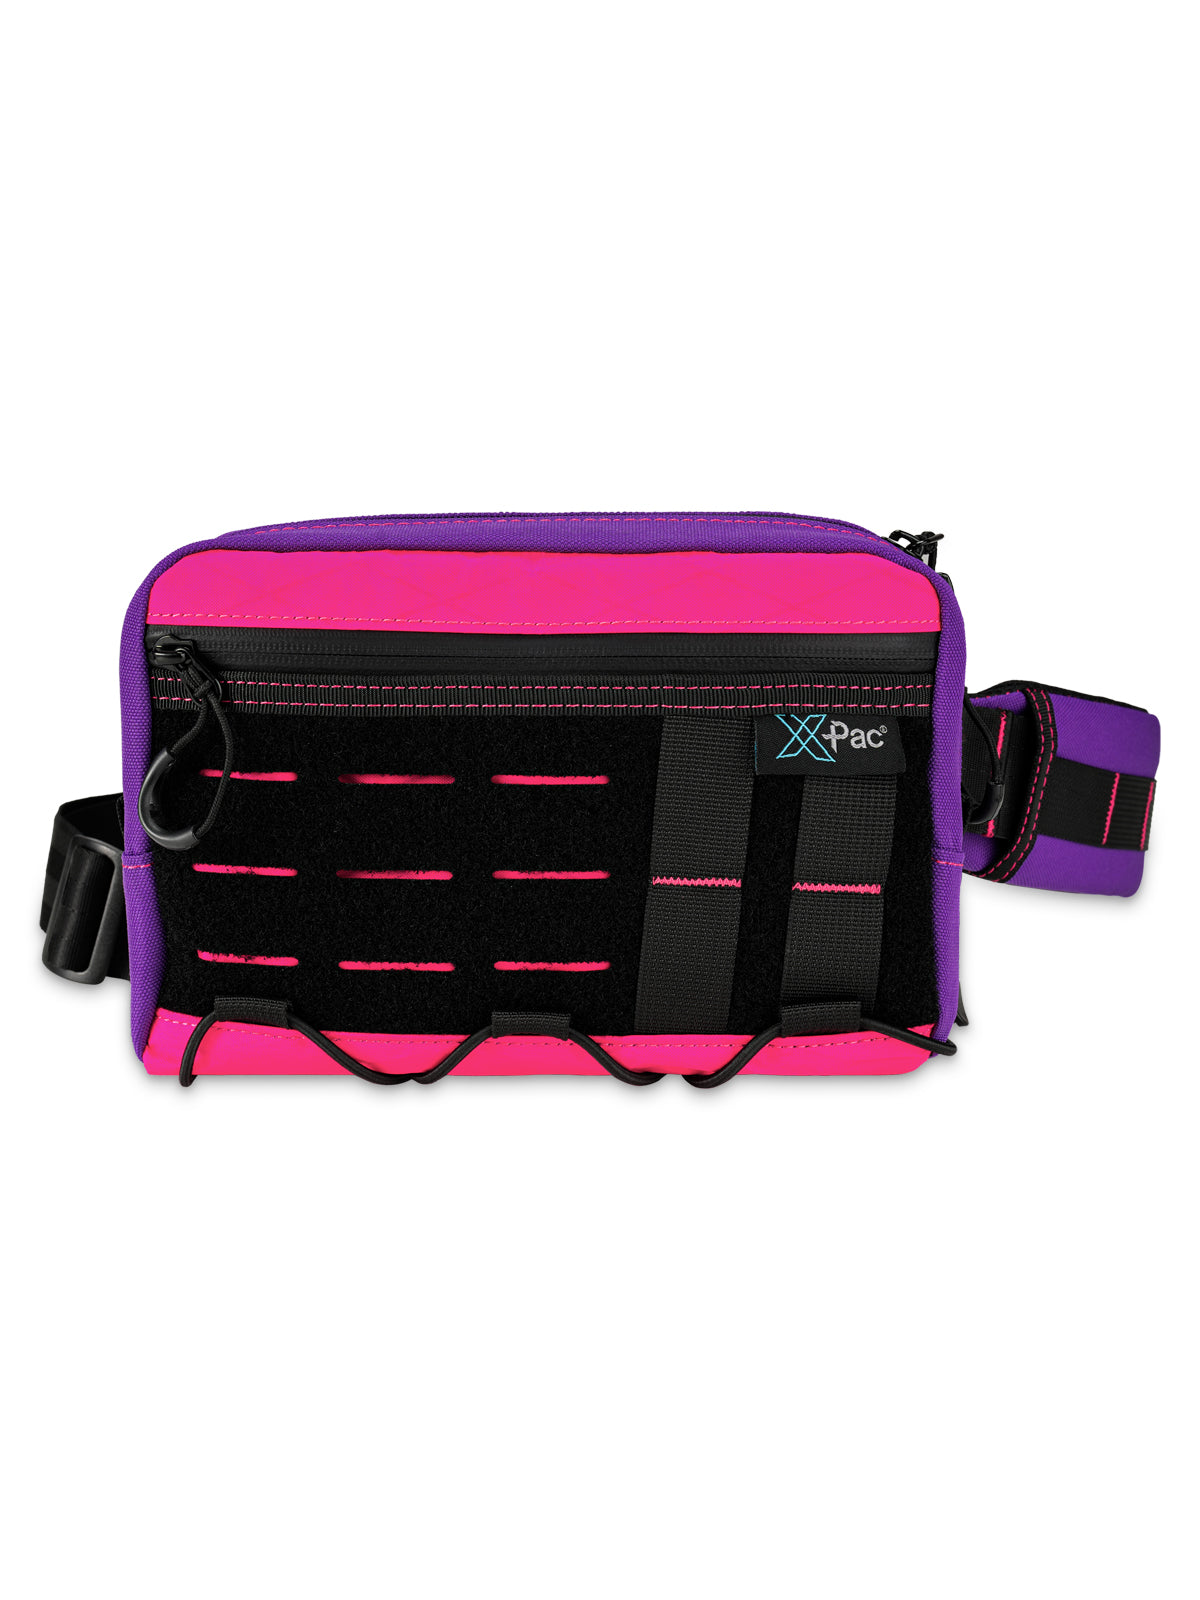 Cache L3S EDC Shoulder Bag （X-pac Pink）